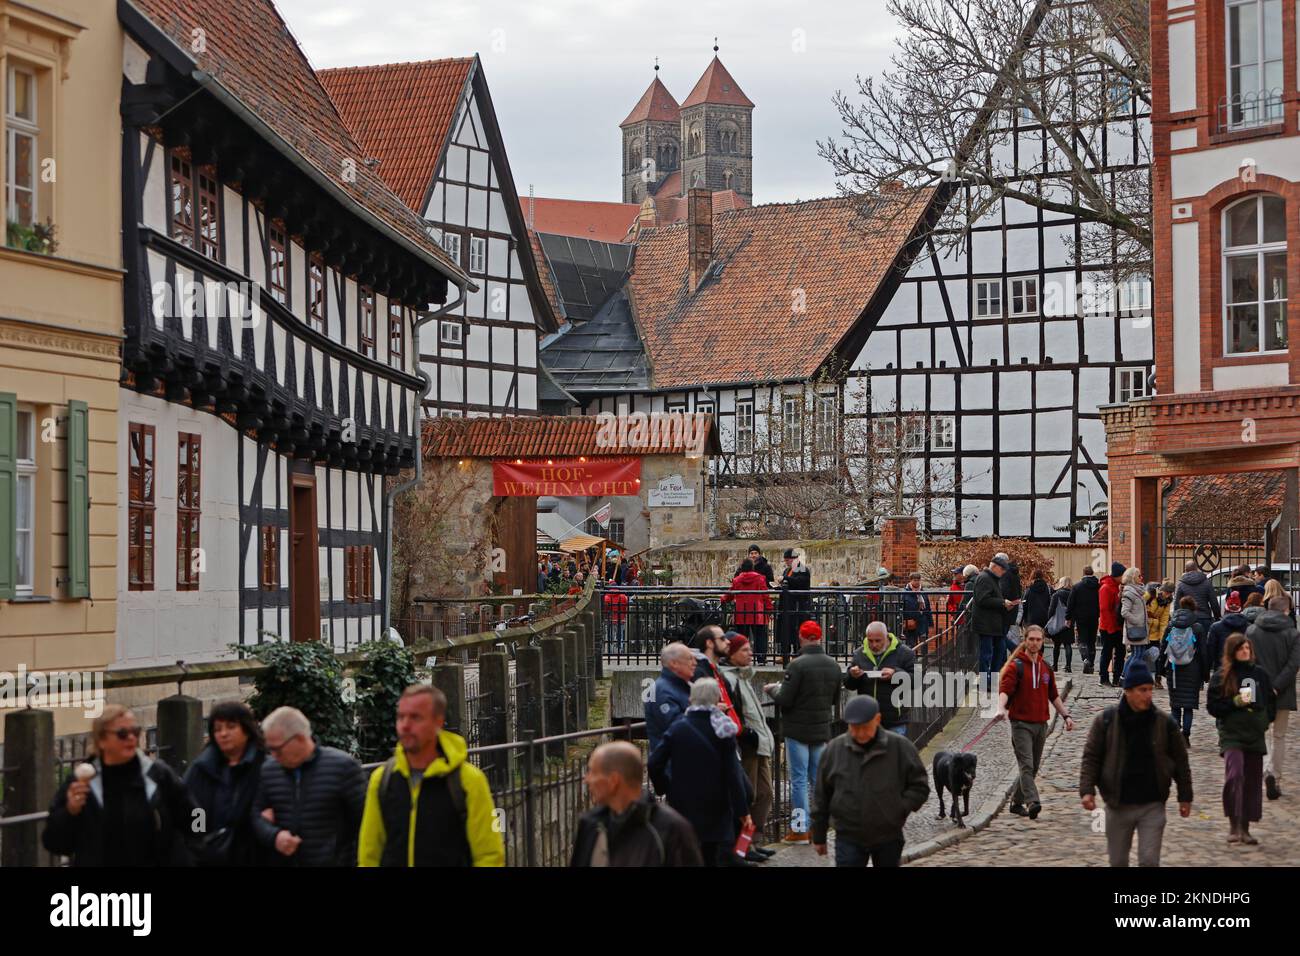 27. November 2022, Sachsen-Anhalt, Quedlinburg: Besucher machen einen Spaziergang durch die Stadt Quedlinburg. Am ersten Adventswochenende zog Quedlinburg erneut Tausende Besucher an. Jedes Jahr verwandelt sich Quedlinburg am Ende des Jahres in eine Weihnachtsstadt. Mehr als 20 historische Fachwerkhäuser öffnen dann ihre Türen und geben Besuchern einen Einblick in ihre mittelalterlichen Innenhöfe. Am ersten, zweiten und dritten Adventswochenende in Quedlinburg können Sie das Advent in den Höfen besuchen. Aber auch der Weihnachtsmarkt und der Adventskalender Stockfoto